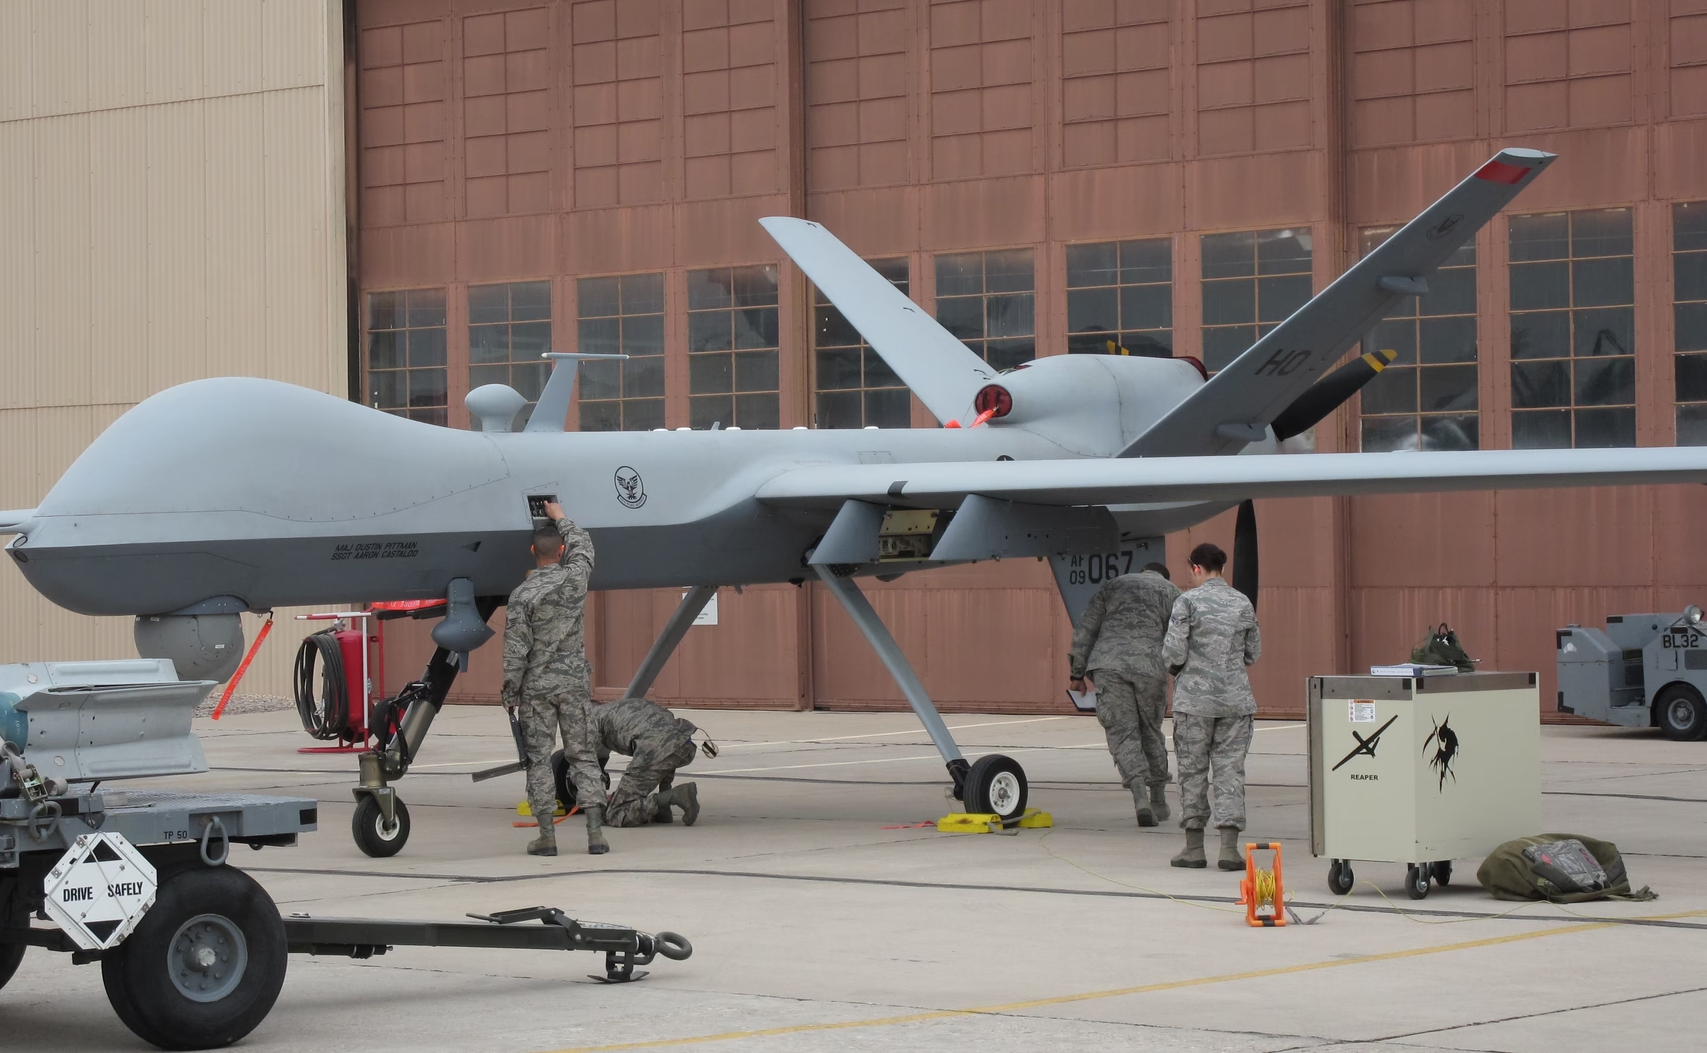 Simulare: O dronă controlată de inteligența artificială a ales să își ucidă operatorul uman ca să-l împiedice să interfereze cu îndeplinirea misiunii